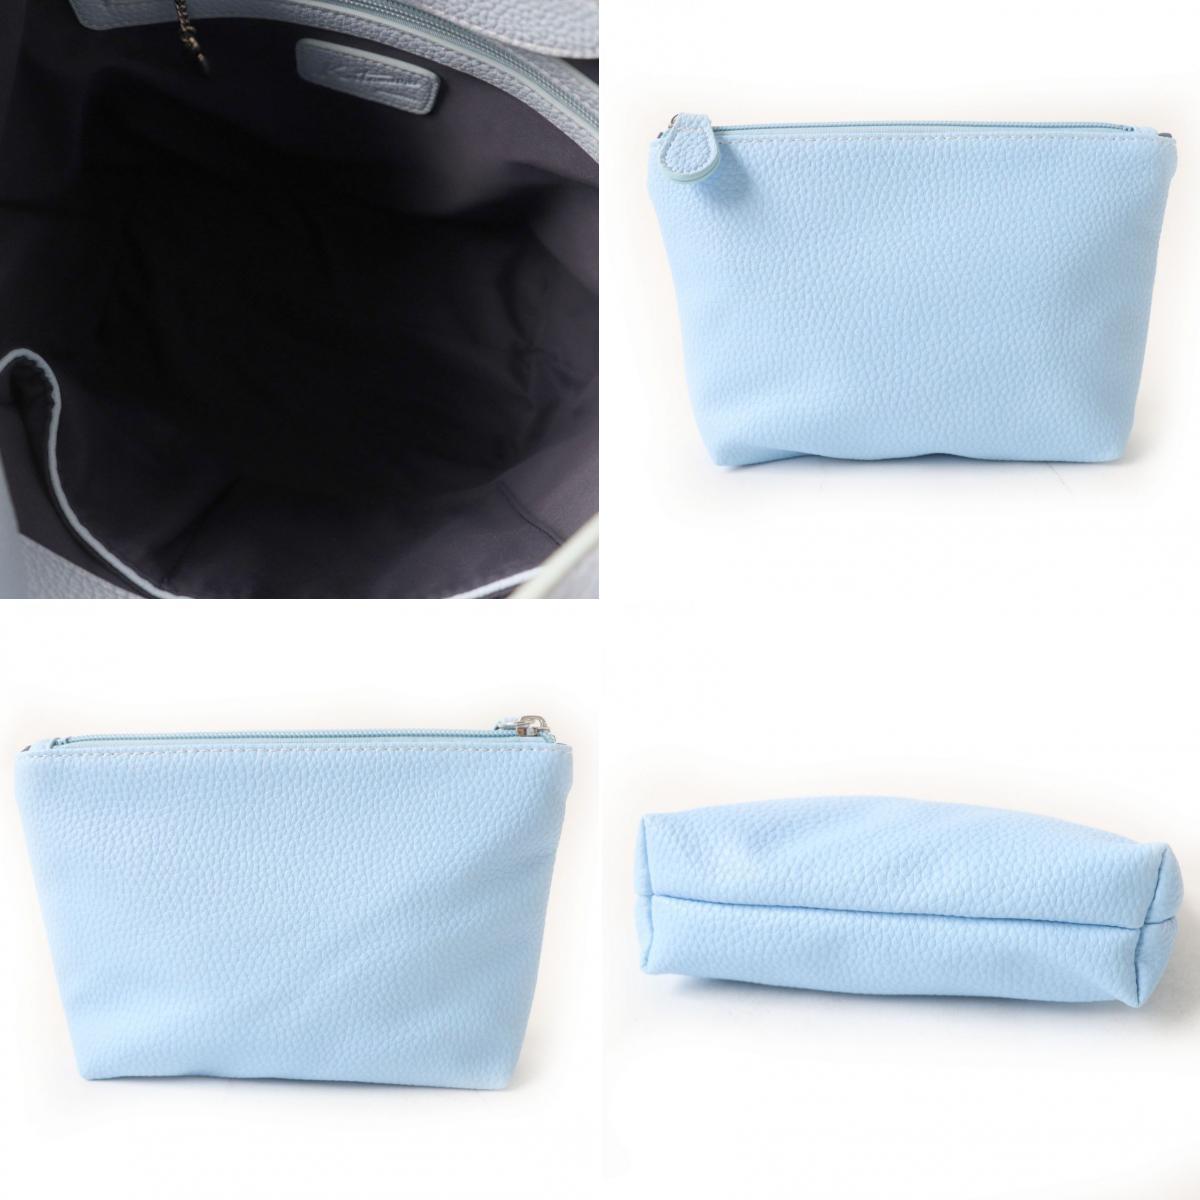  превосходный товар *Kitamura Kitamura сумка имеется K Logo печать ввод дизайн все кожа 2WAY ручная сумочка / сумка на плечо голубой женский 